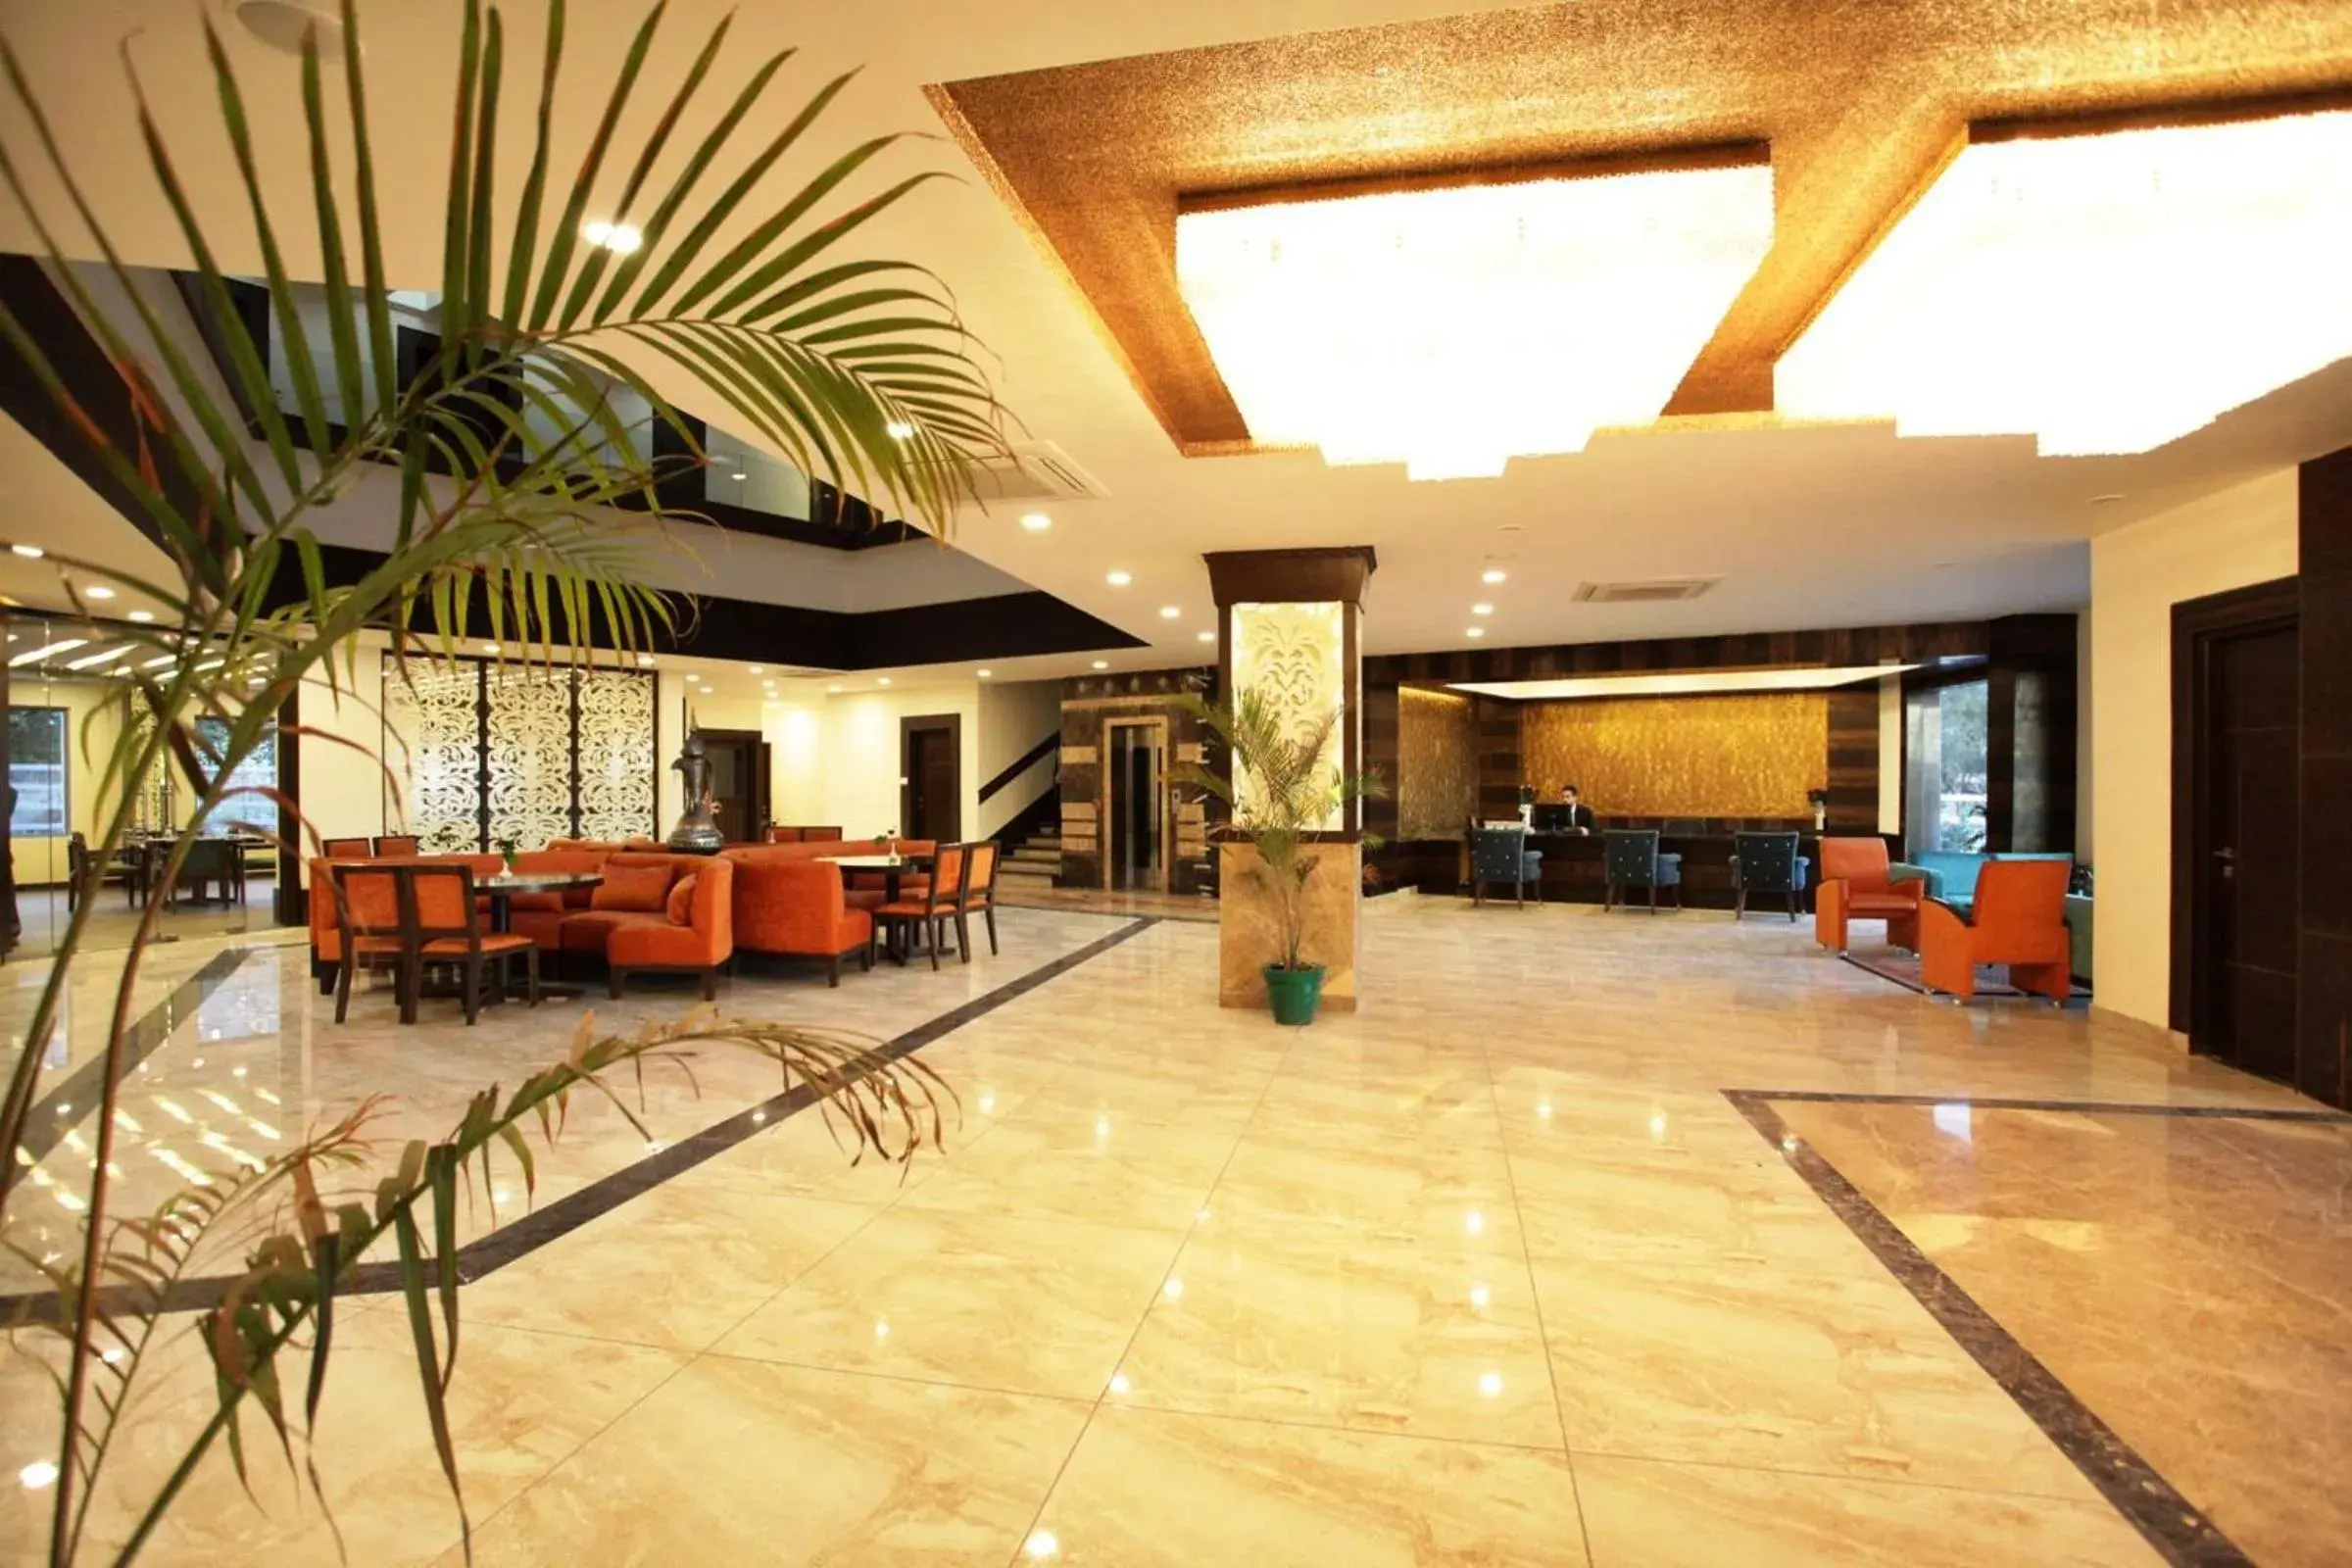 Lobby or reception, Lobby/Reception in Lemon Tree Hotel, Katra